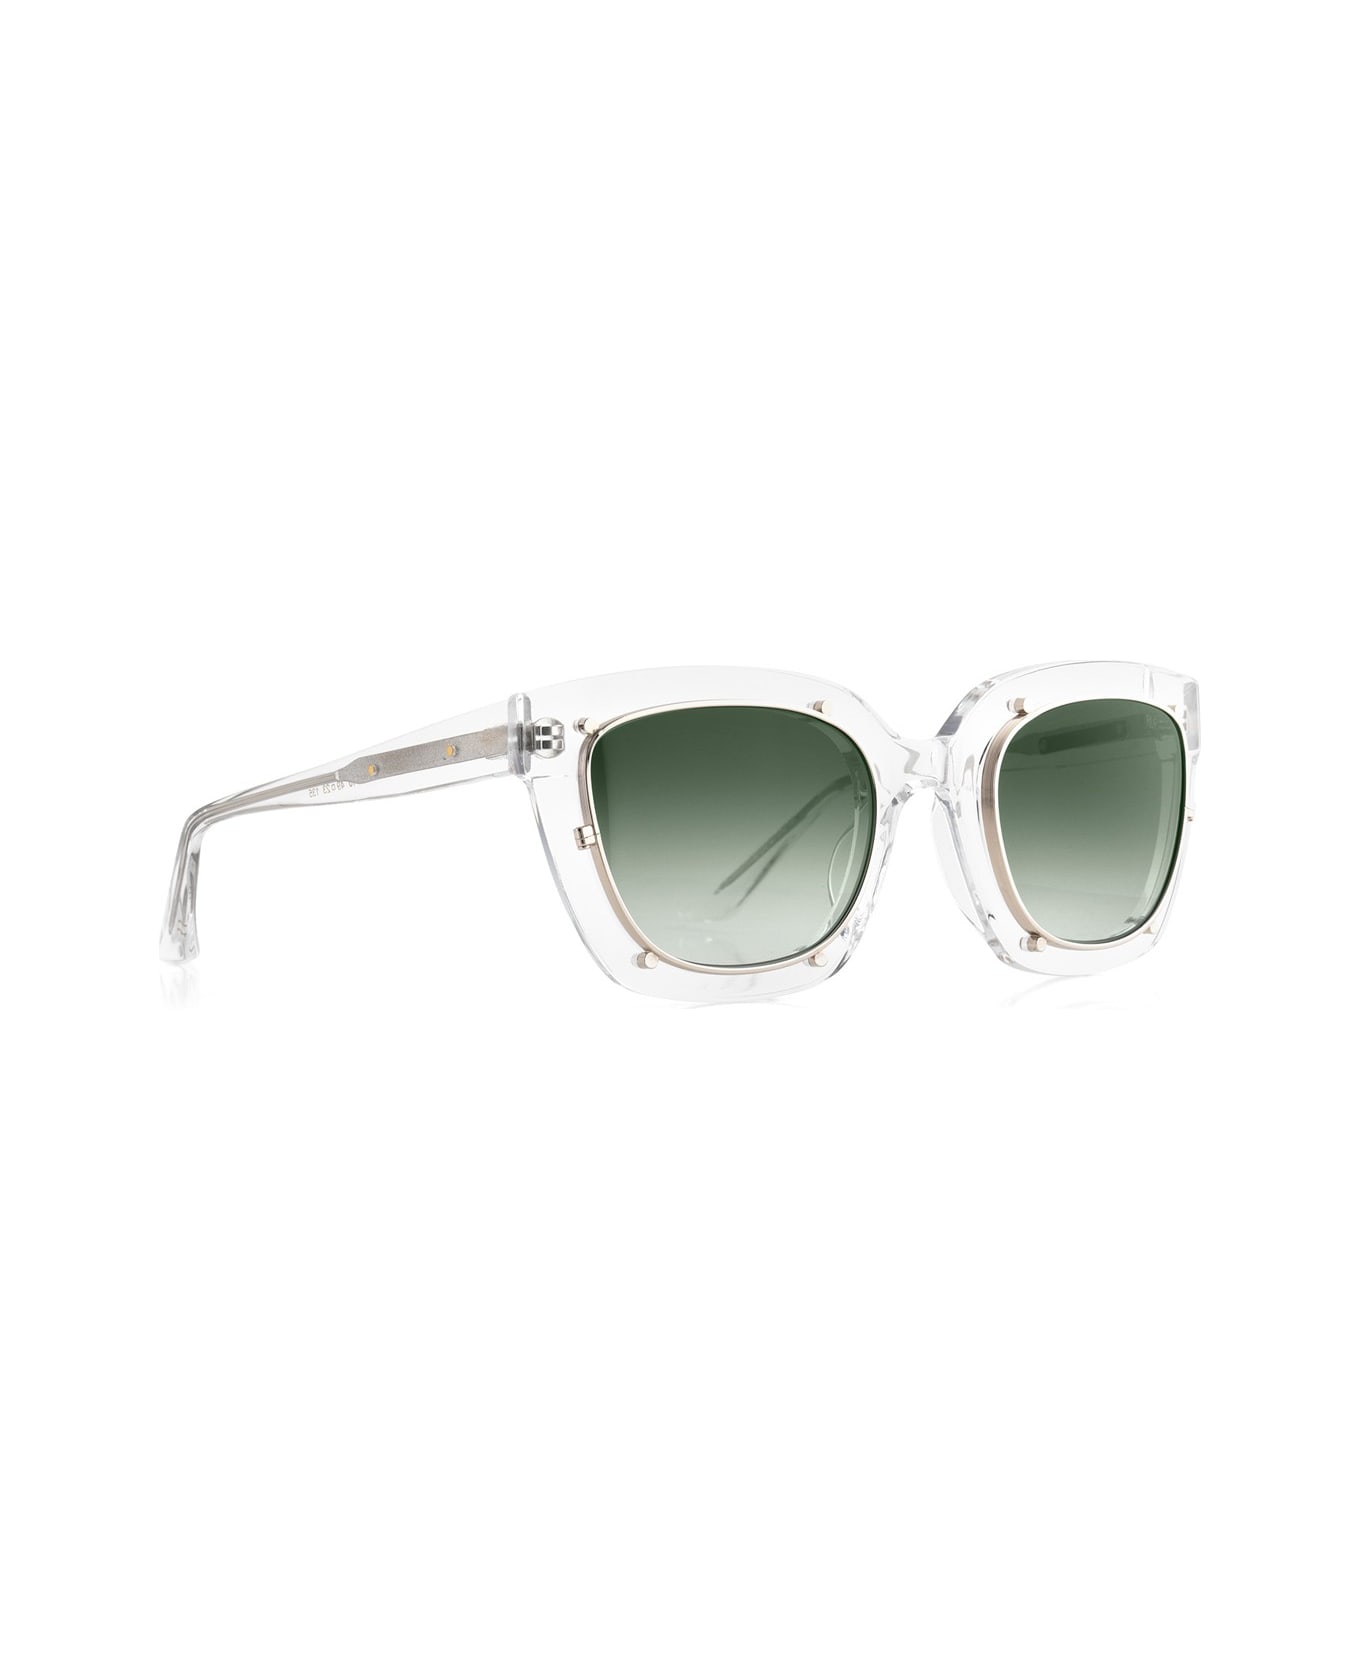 Robert La Roche Rlr S284 Sunglasses - Trasparente